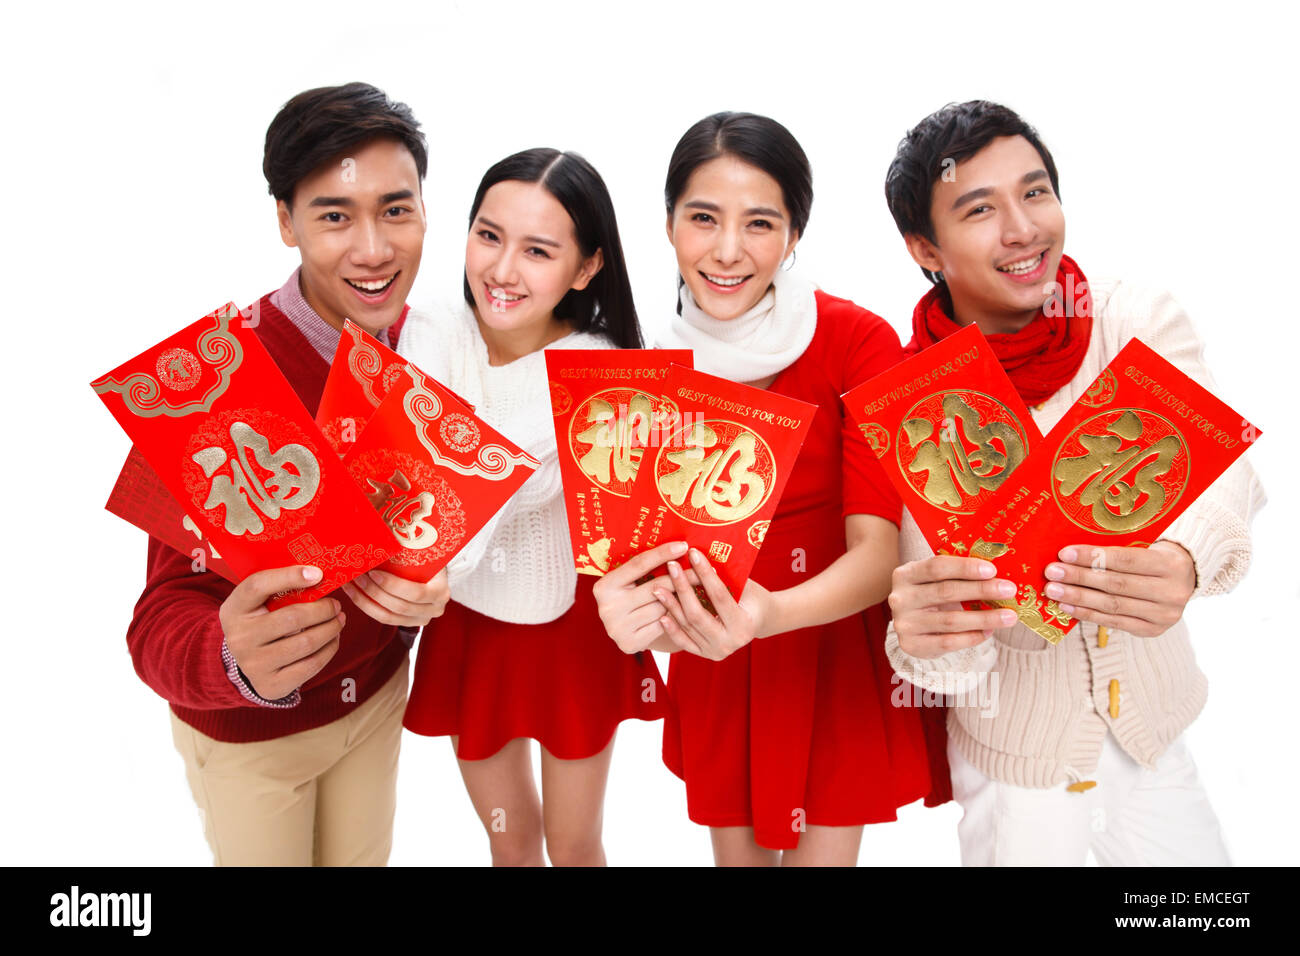 Die vier jungen Männer und Frauen sind mit einem roten Umschlag begeistert. Stockfoto